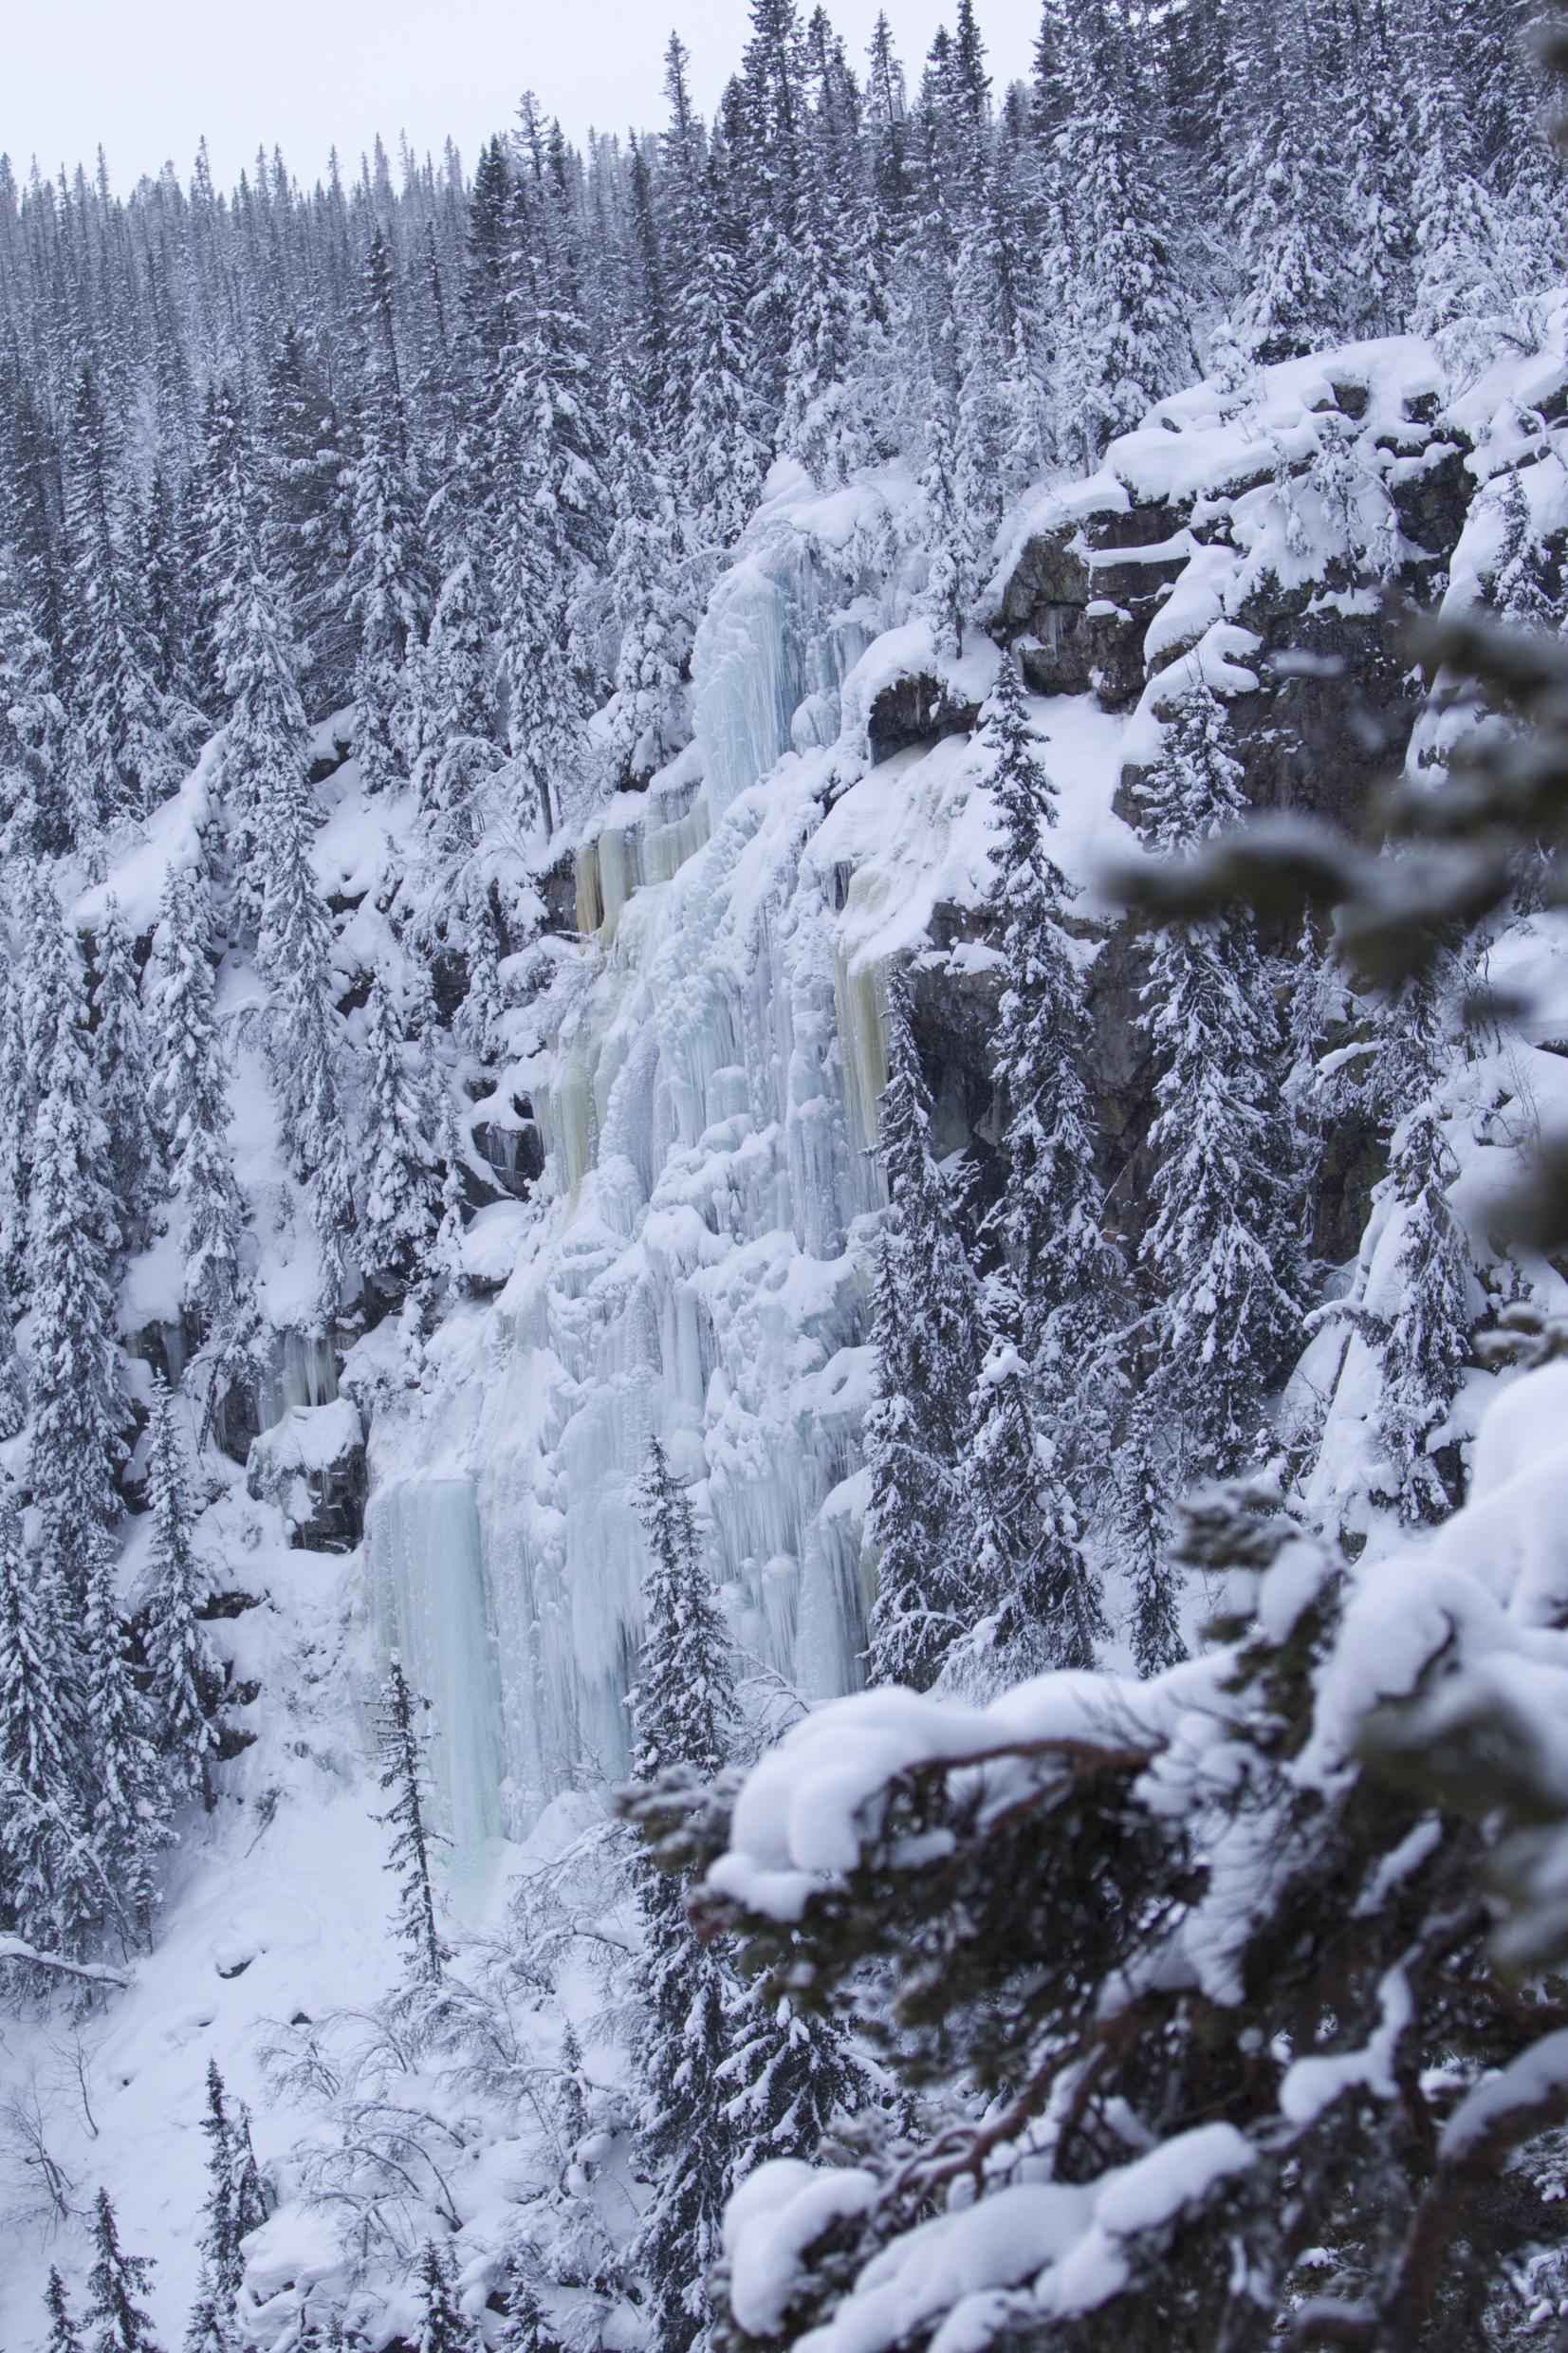 Schneebedeckte Tannen an einem Hang umrahmen einen mehrstufigen gefrorenenen Wasserfall mit seinen Eiszapfen